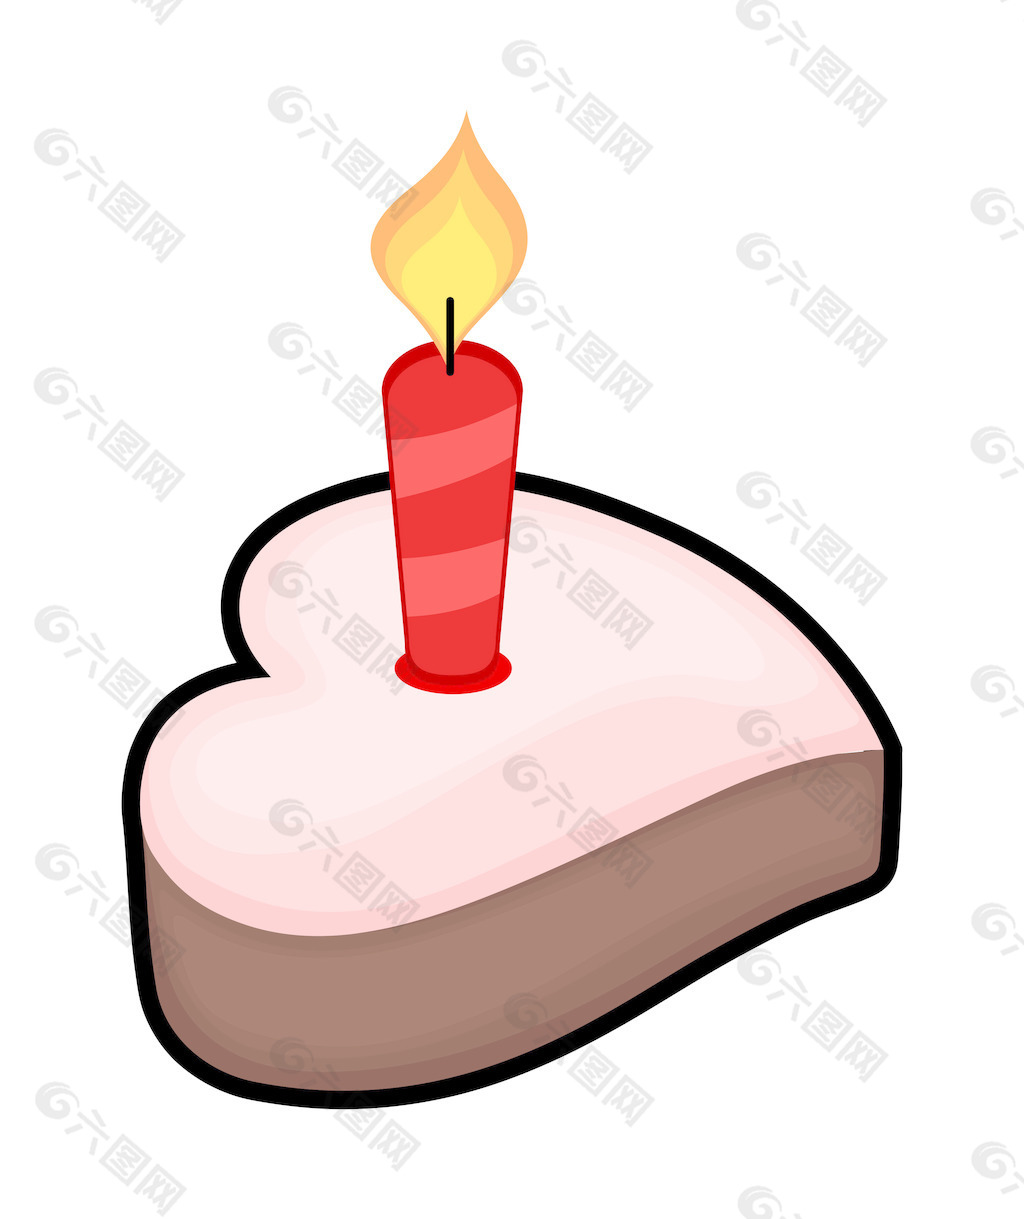 厂家直销新款生日蛋糕插卡寿辰烘焙蛋糕爱心蛋糕装饰插牌蛋糕插卡-阿里巴巴